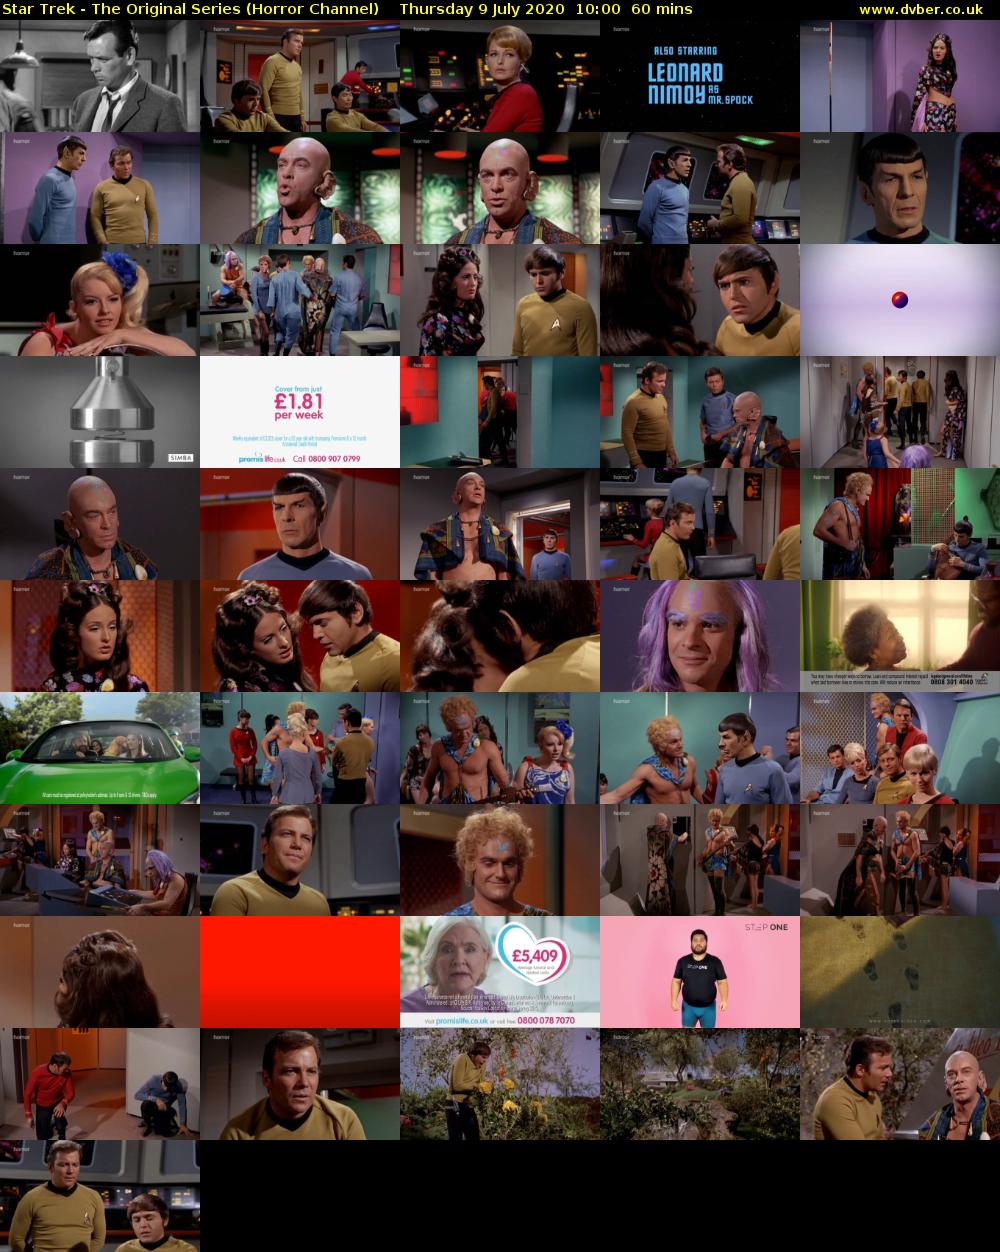 Star Trek - The Original Series (Horror Channel) Thursday 9 July 2020 10:00 - 11:00